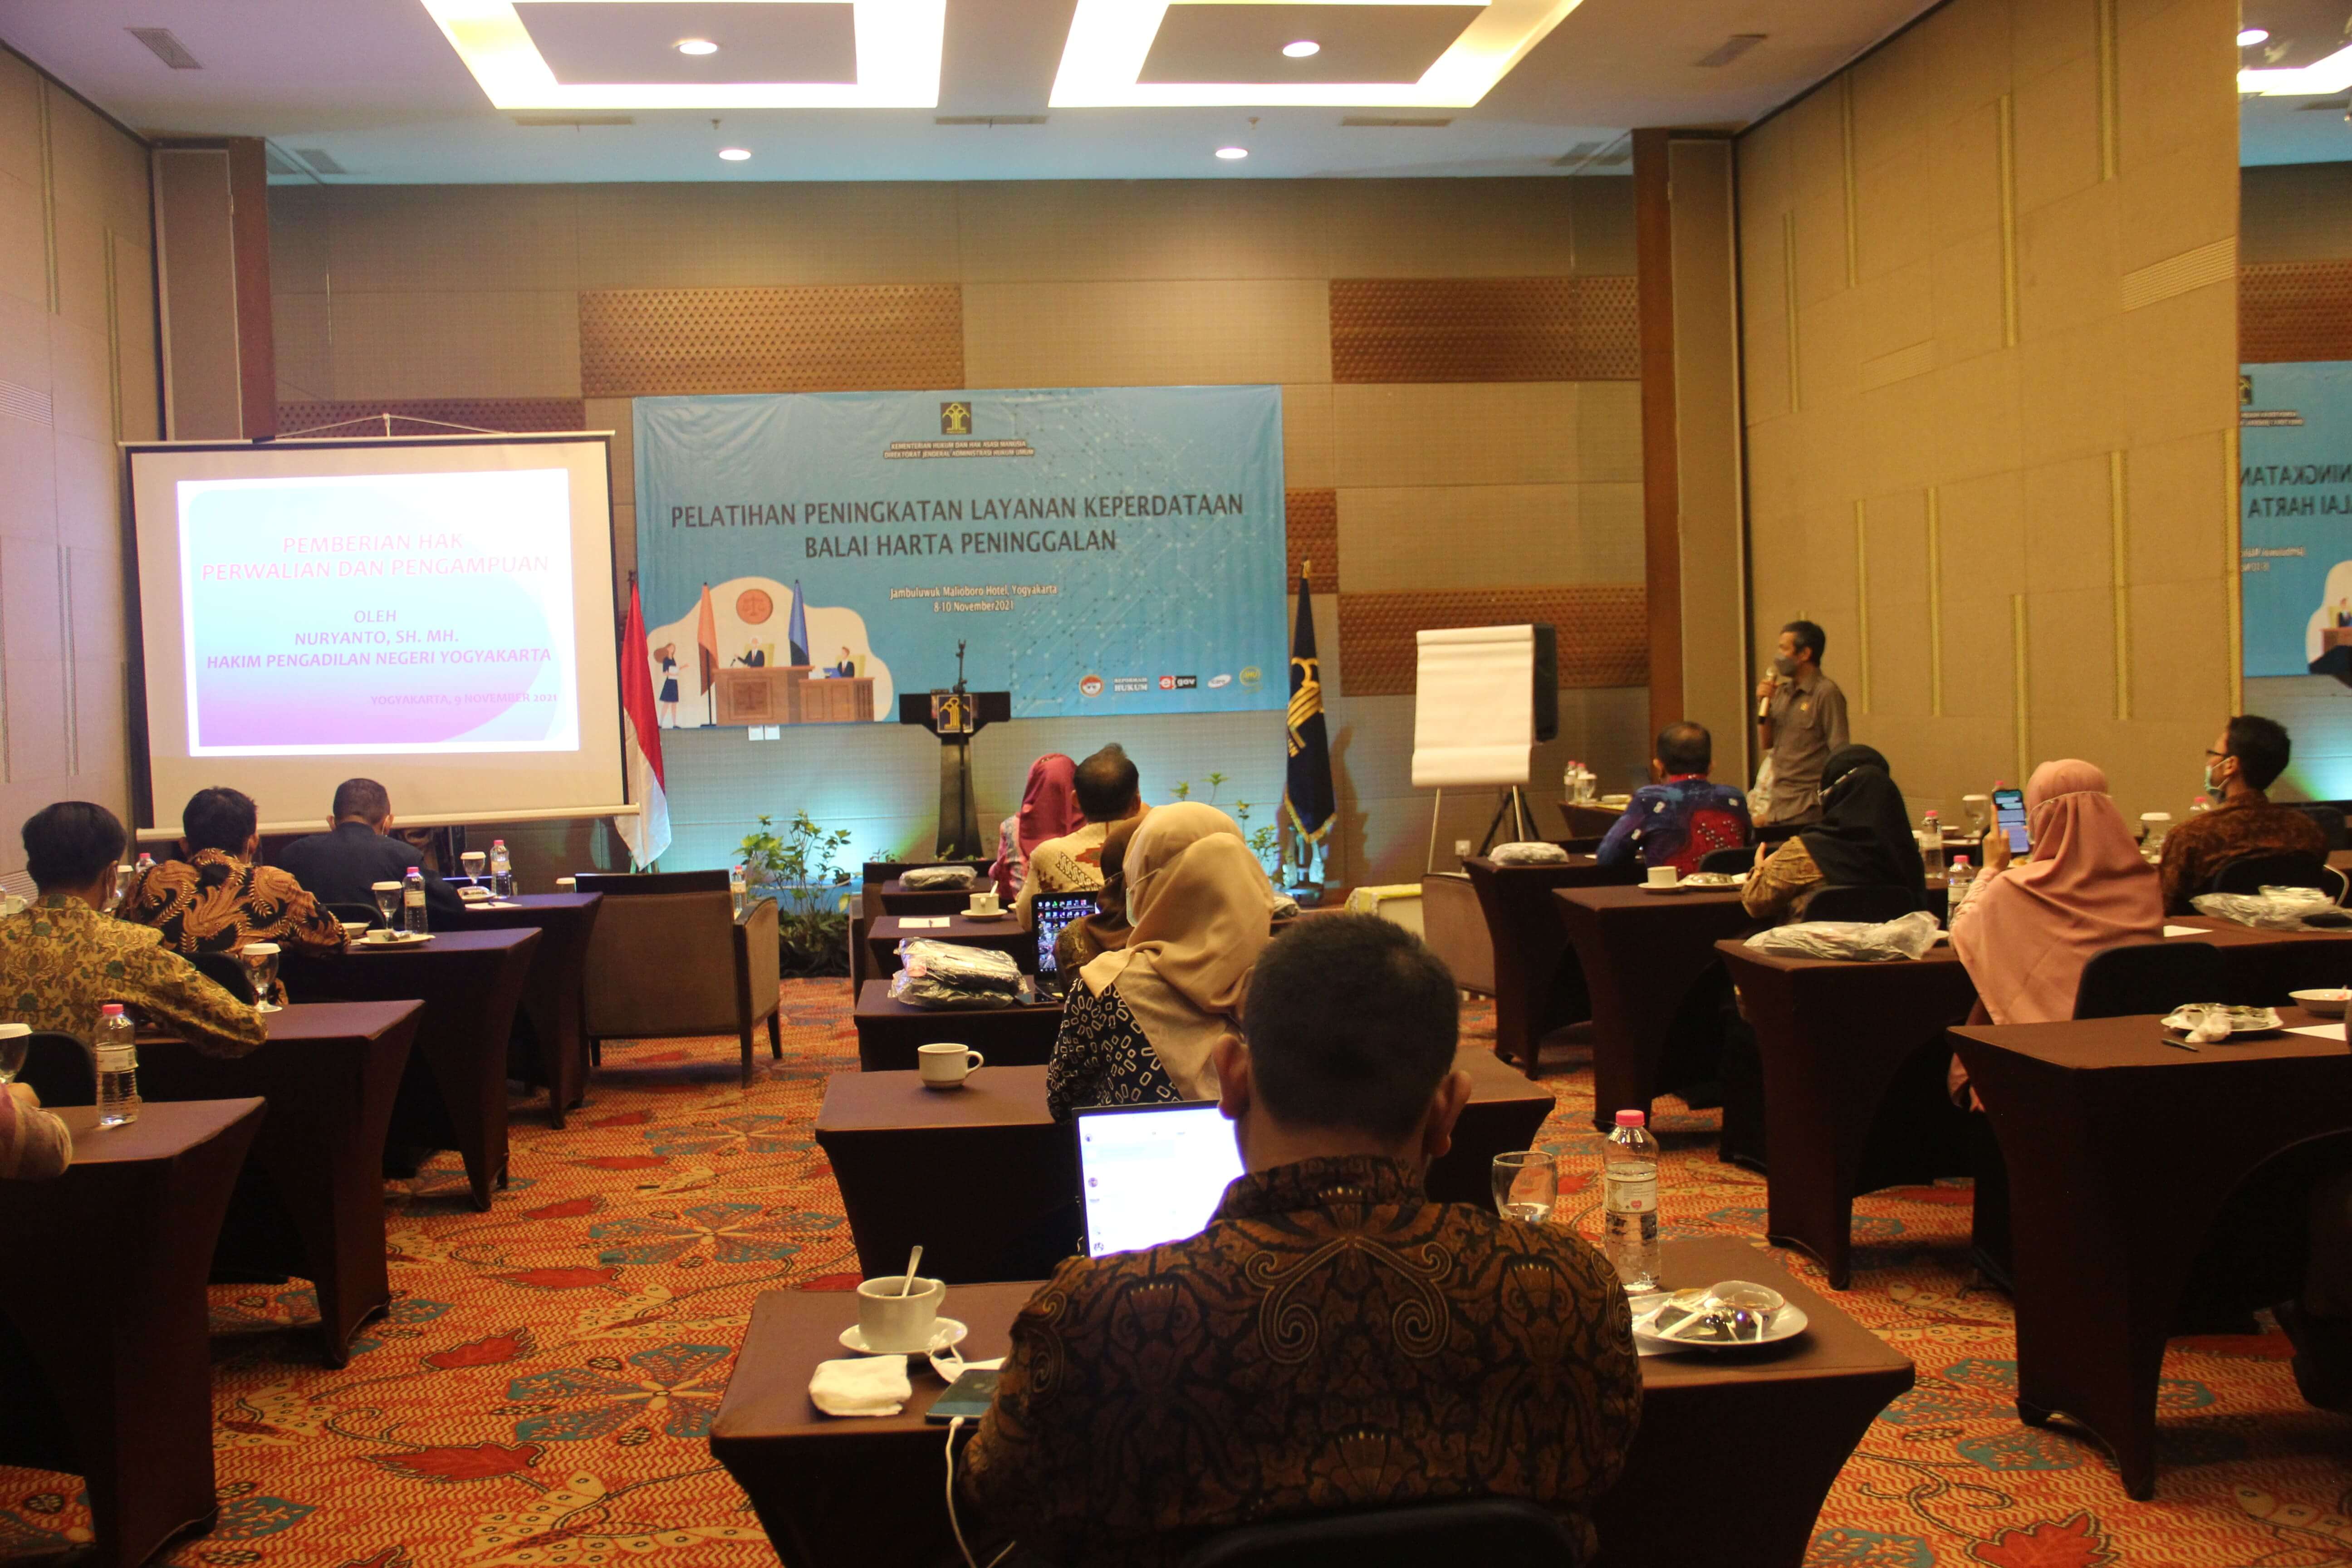 Hakim Pengadilan Negeri Yogyakarta Menghadiri Pelatihan Peningkatan Layanan Keperdataan Balai Harta Peninggalan